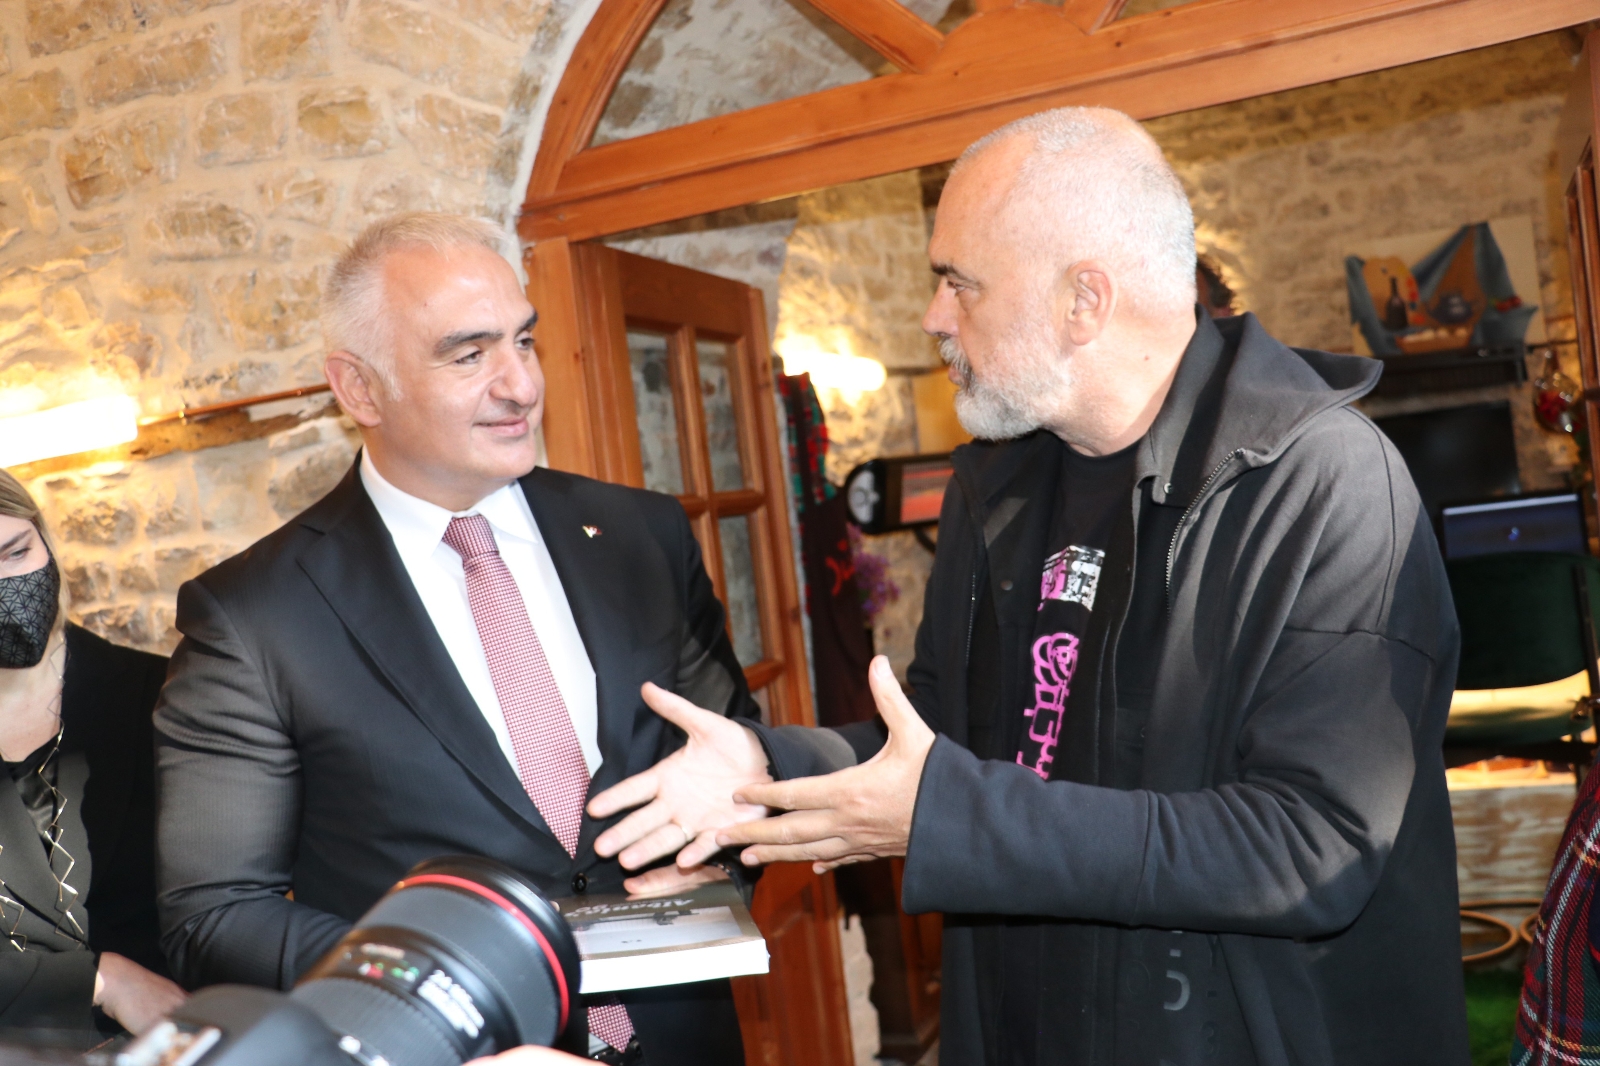 Kültür ve Turizm Bakanı Ersoy, Arnavutluk’ta